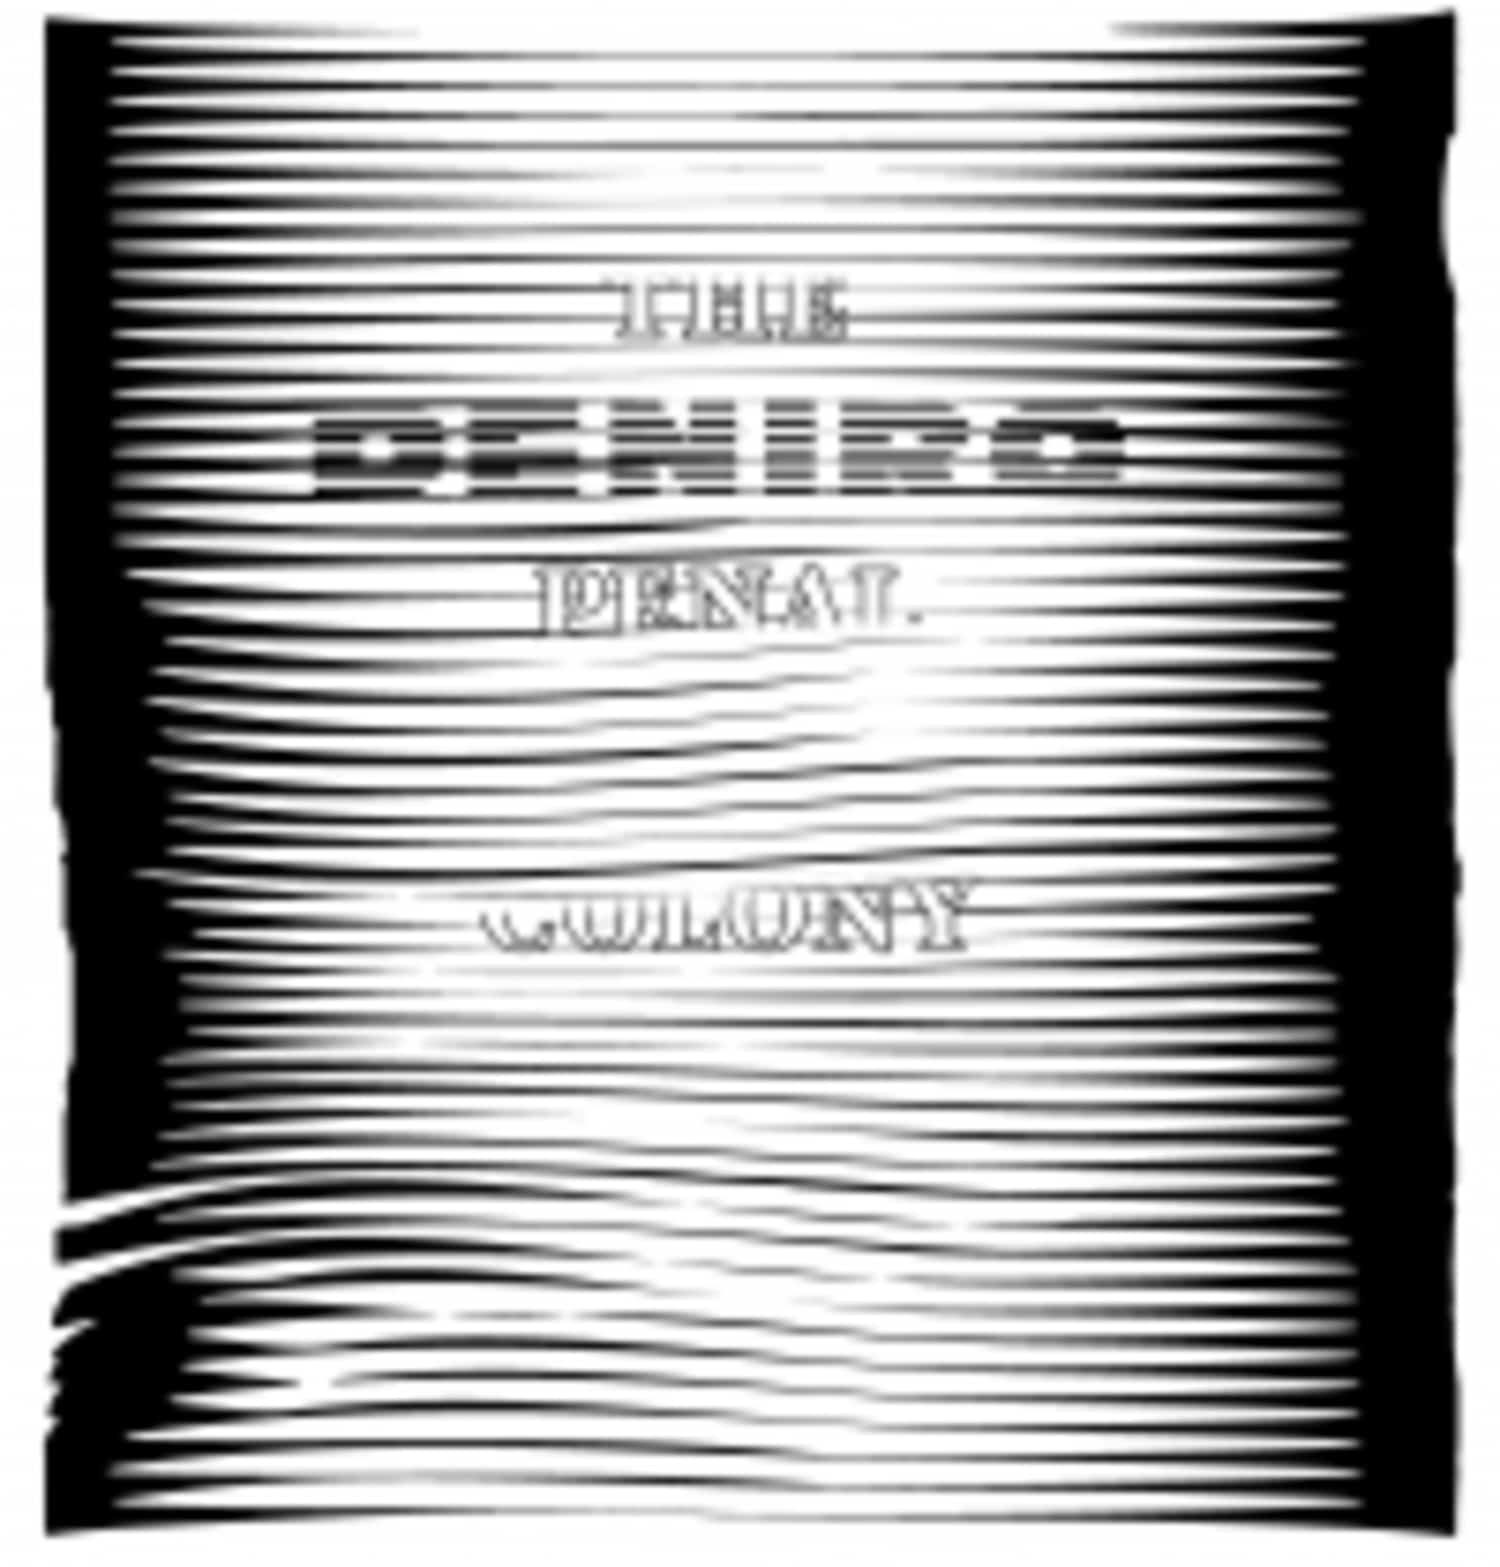 Deniro - THE PENAL COLONY